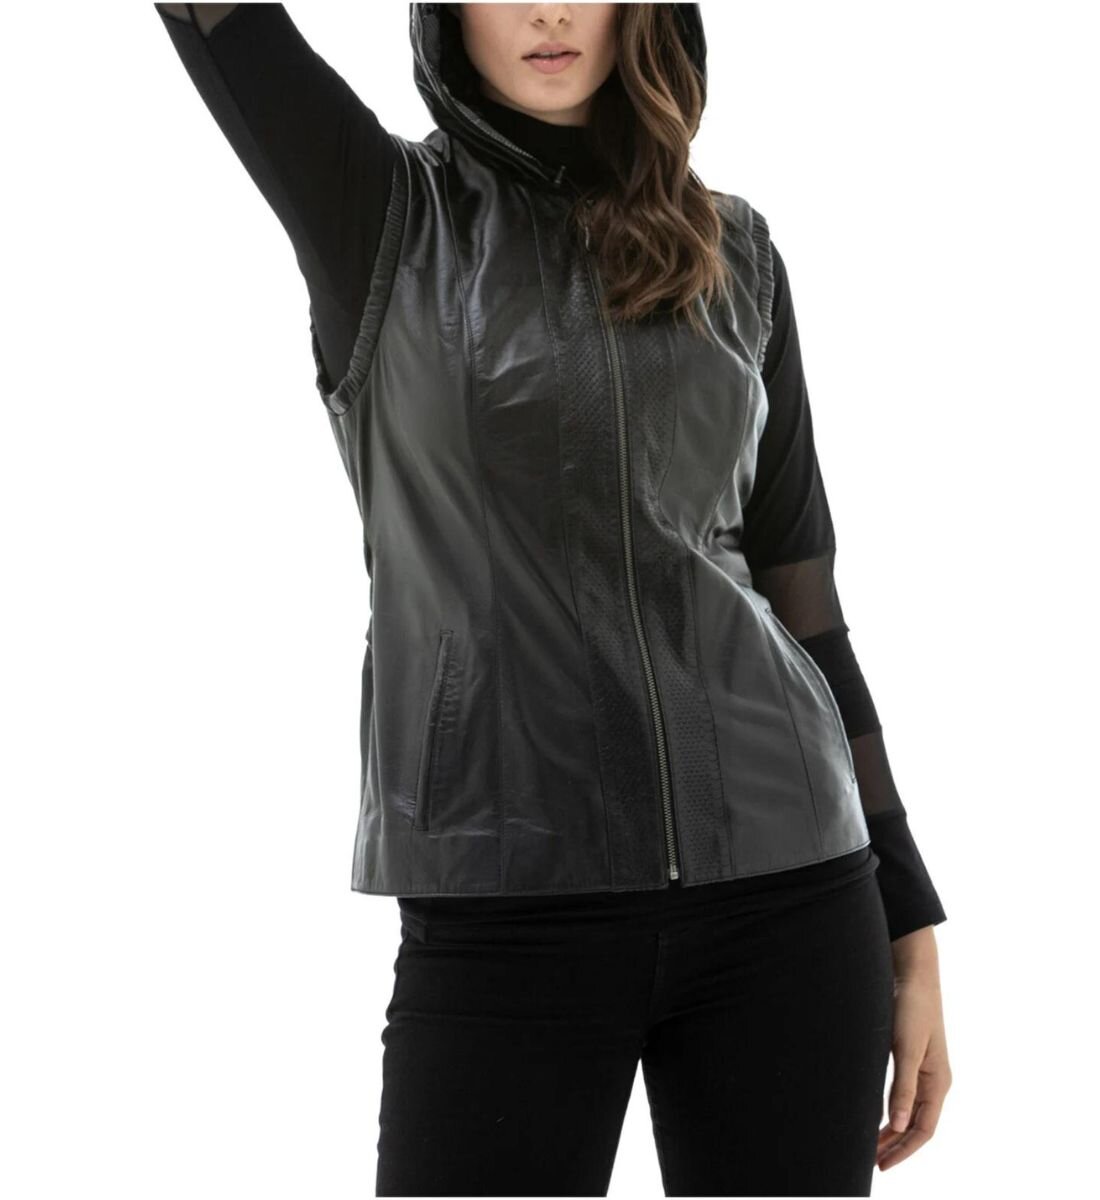 Sleek and Stylish: Black Fashionable Hooded Leather Vest